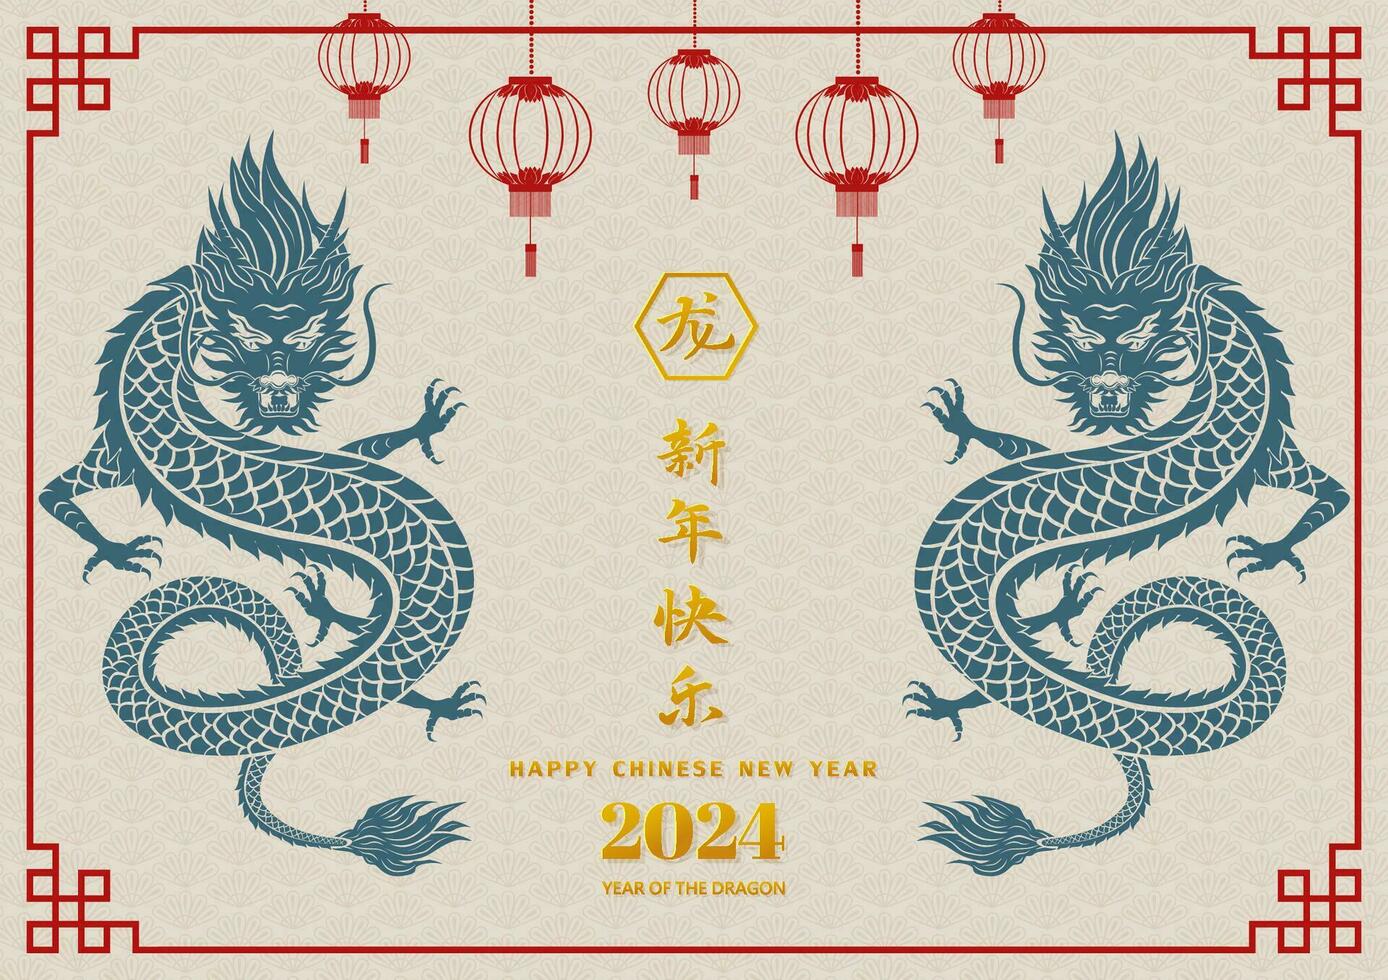 contento chino nuevo año 2024, zodiaco firmar para el año de dragón chino traducir media contento nuevo año, dragón año vector